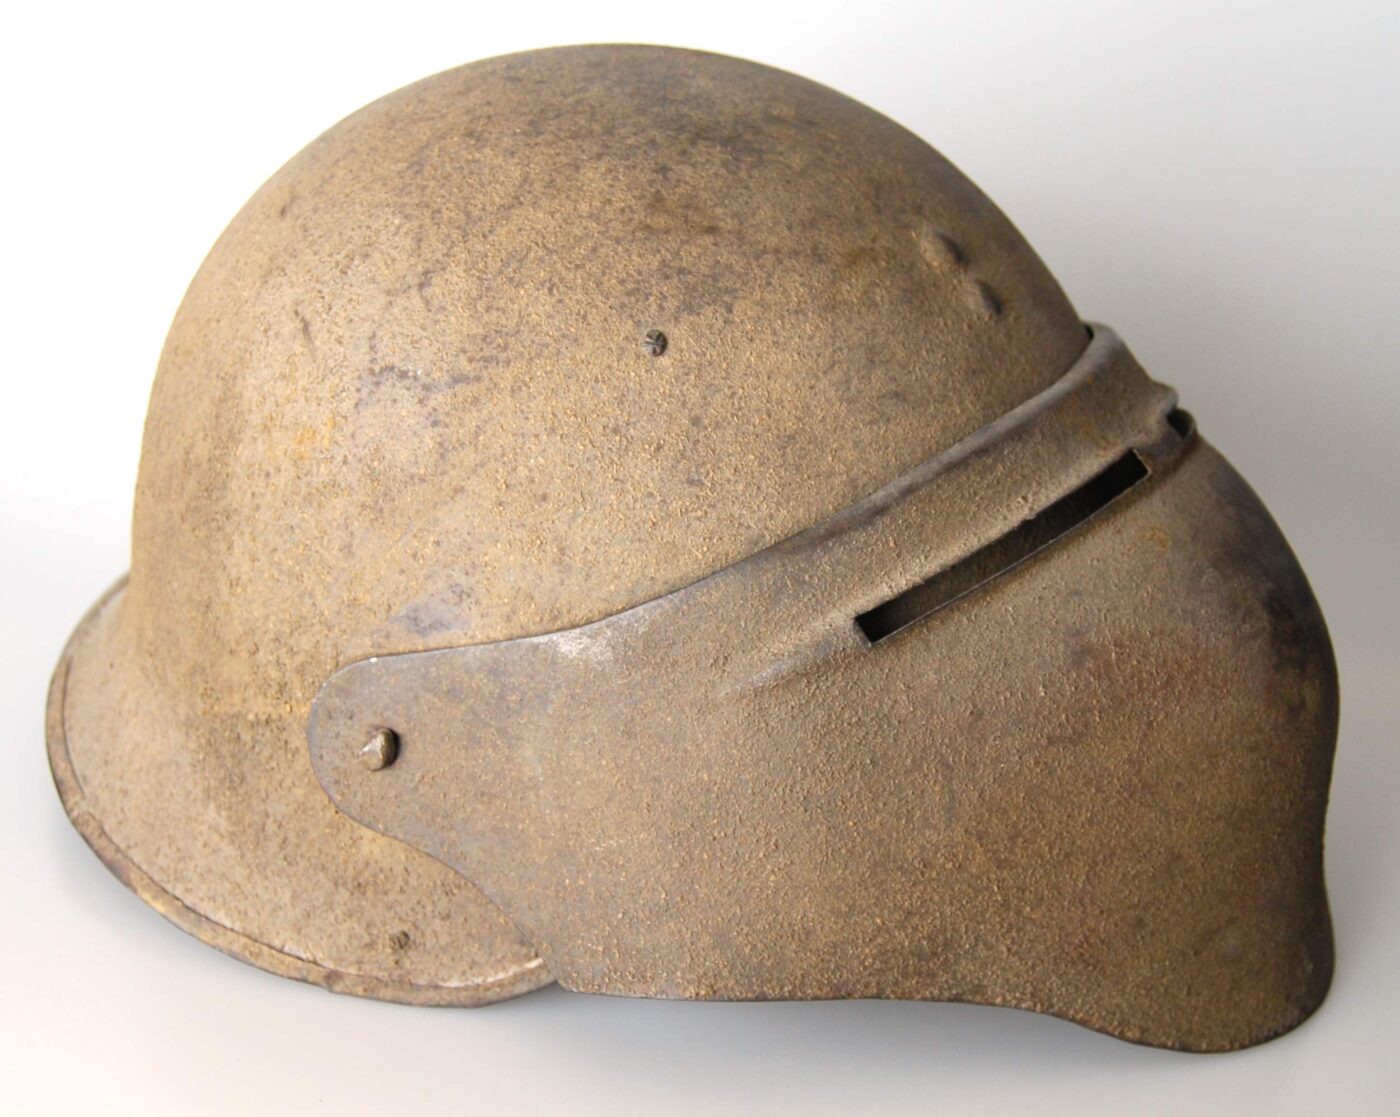 Side view of the U.S. Model 8 helmet